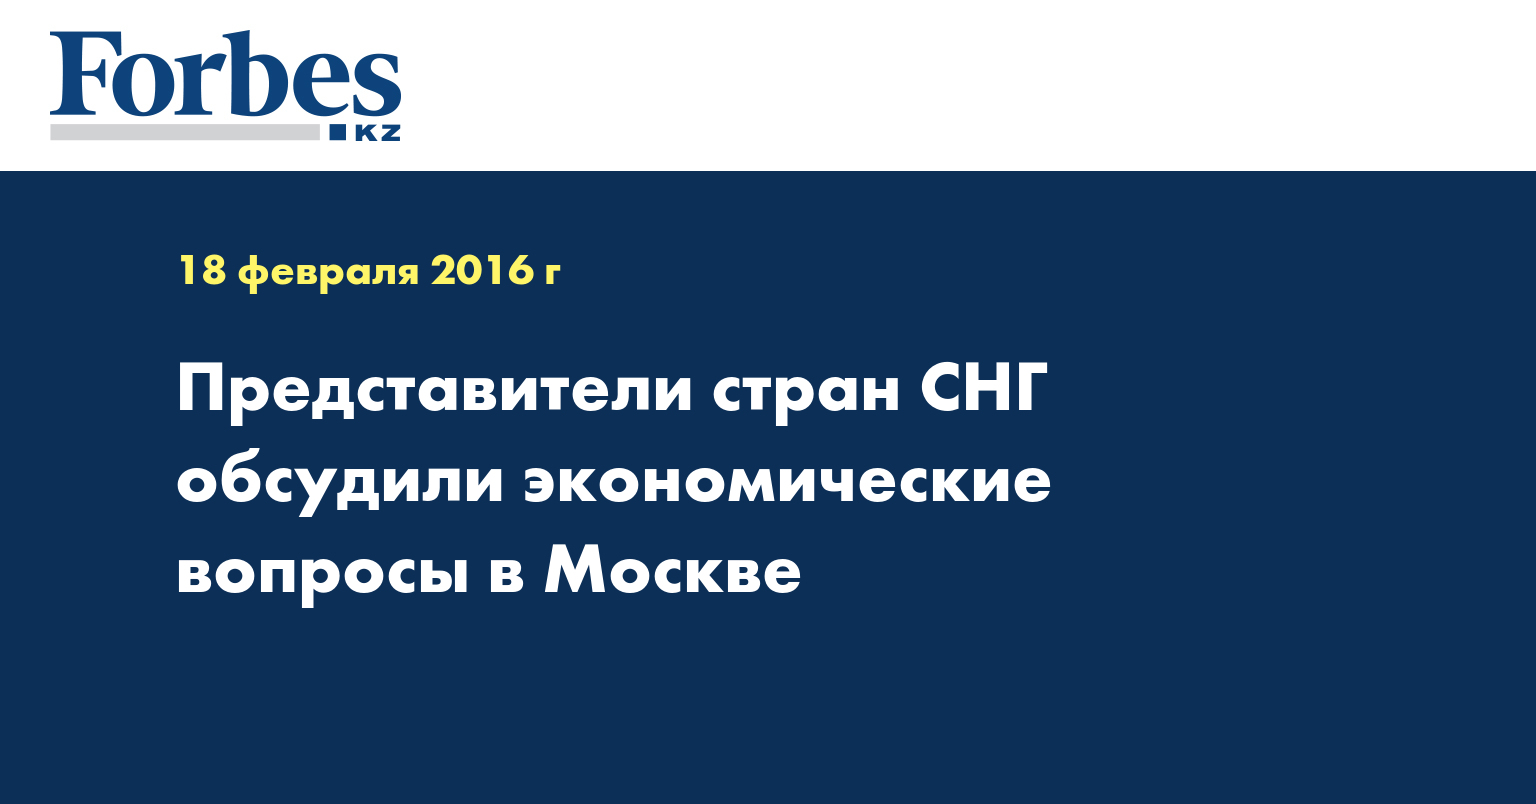 Представители стран СНГ обсудили экономические вопросы в Москве 